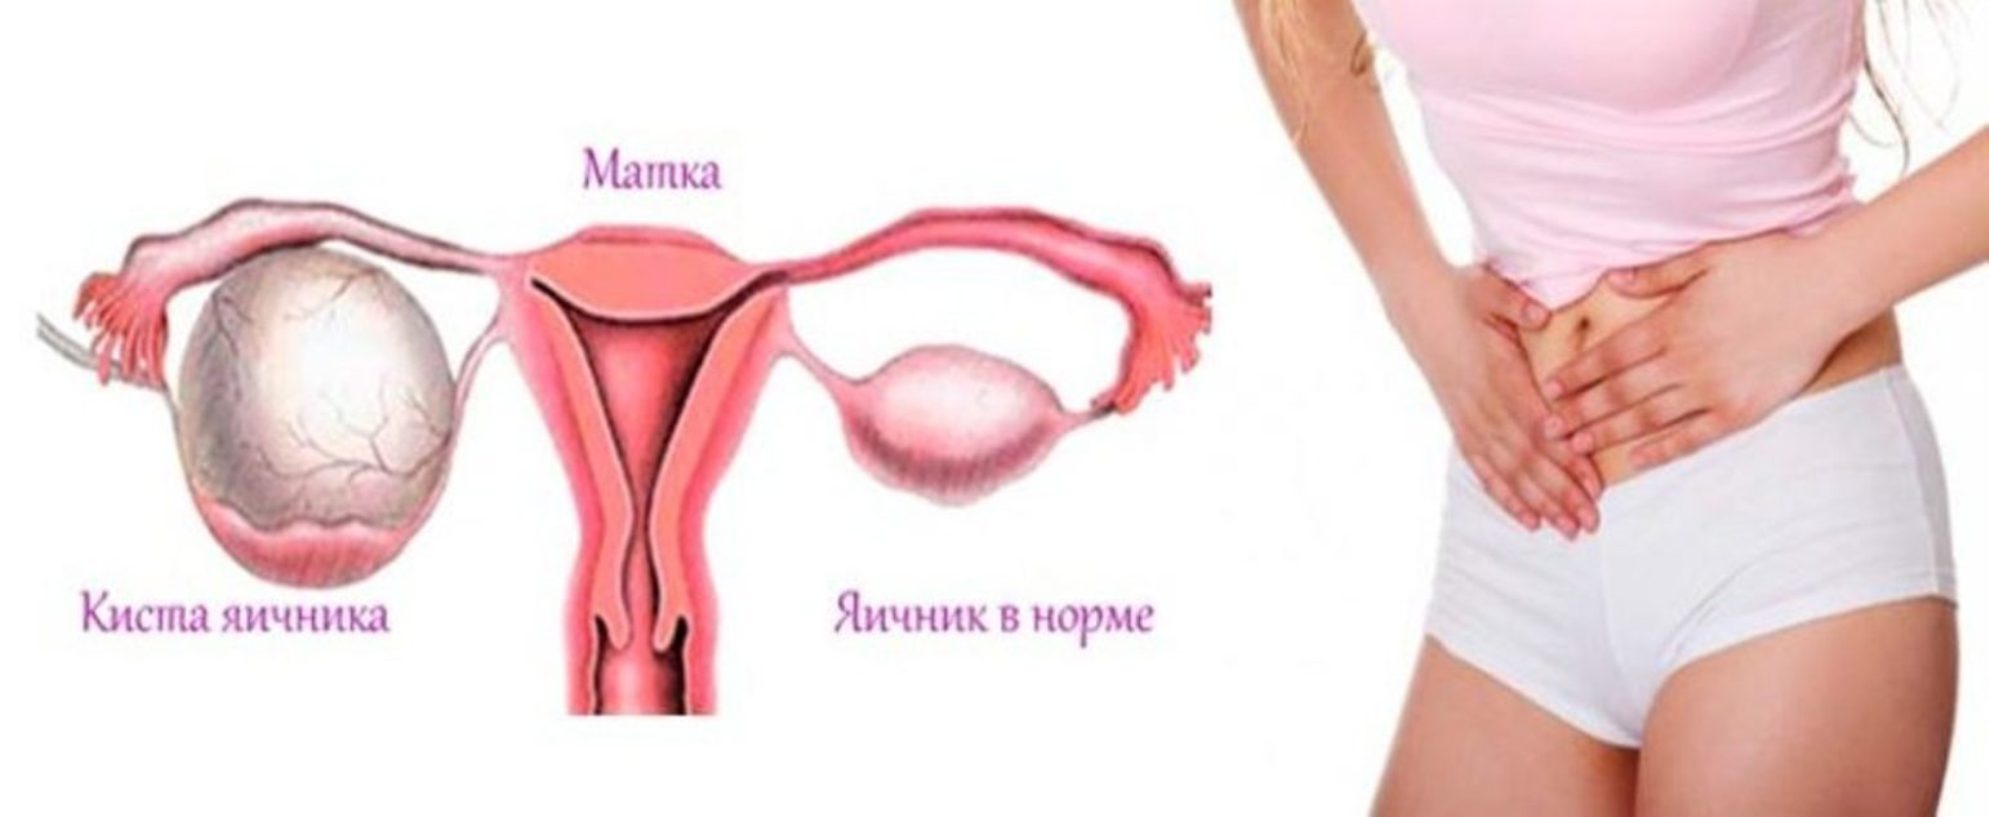 яичники у женщин расположение картинки фото